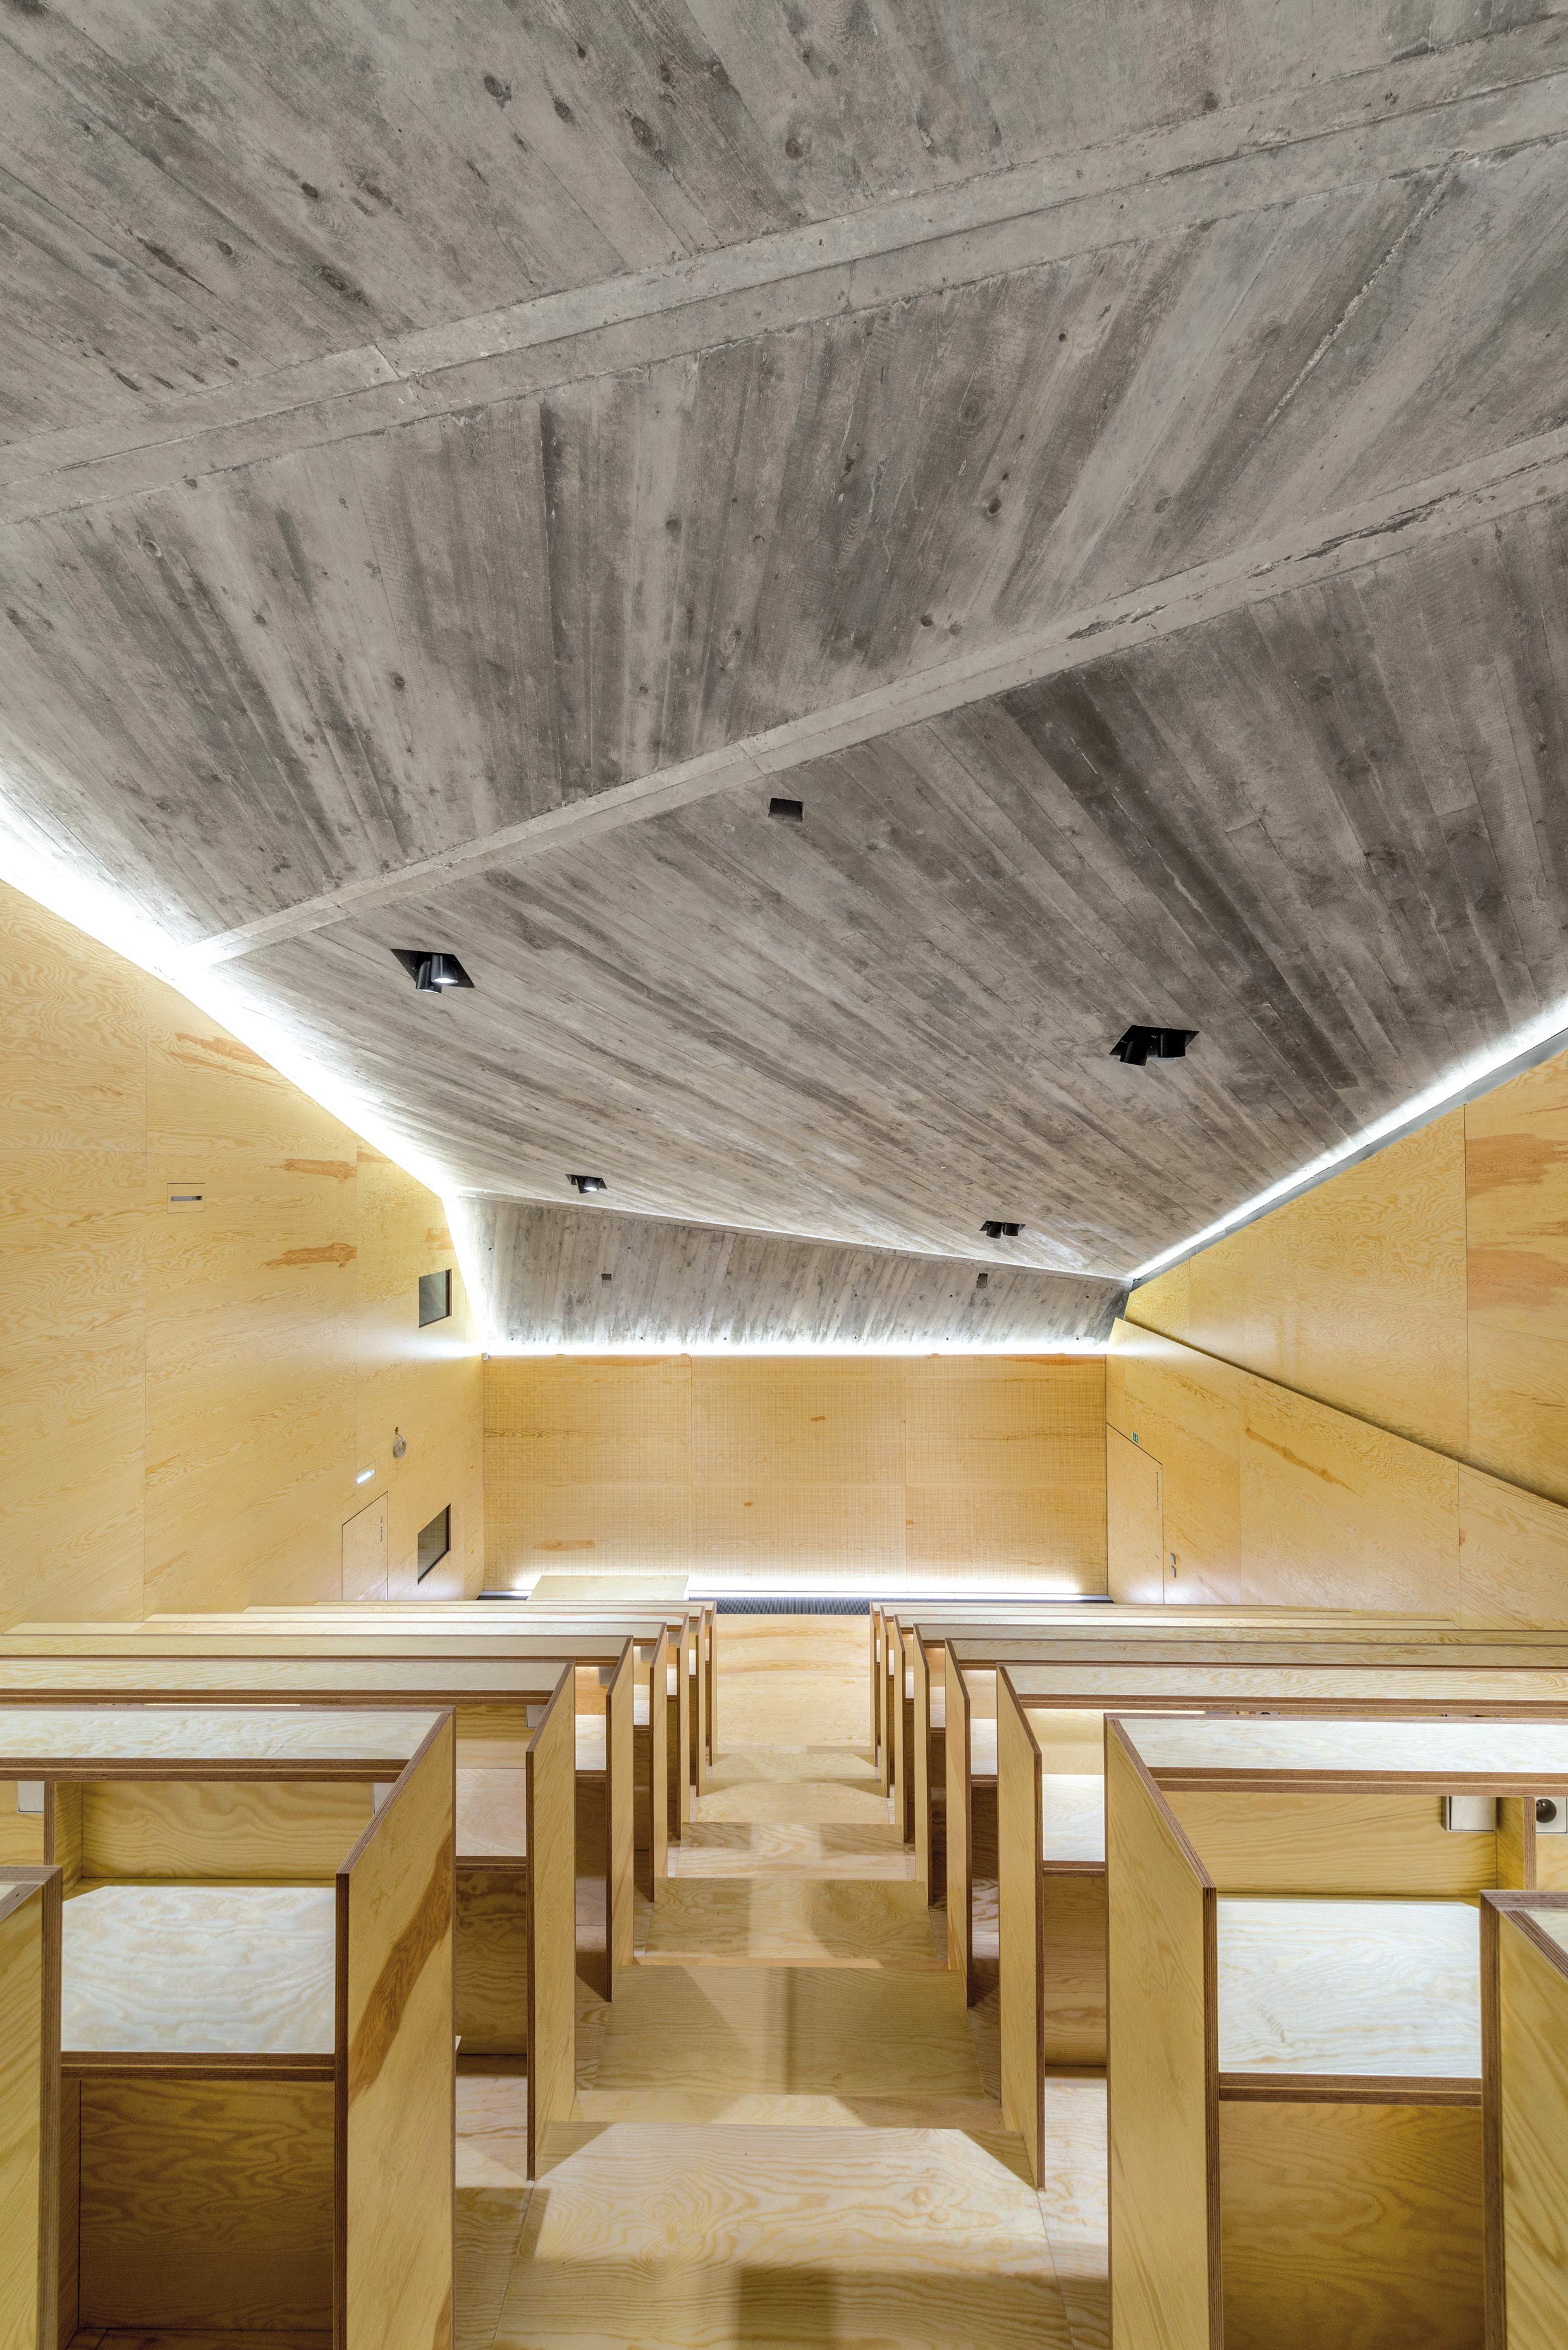 Interiér posluchárny a promítacího sálu je navržen z překližkových desek. Strop z pohledového betonu symbolizuje skálu.